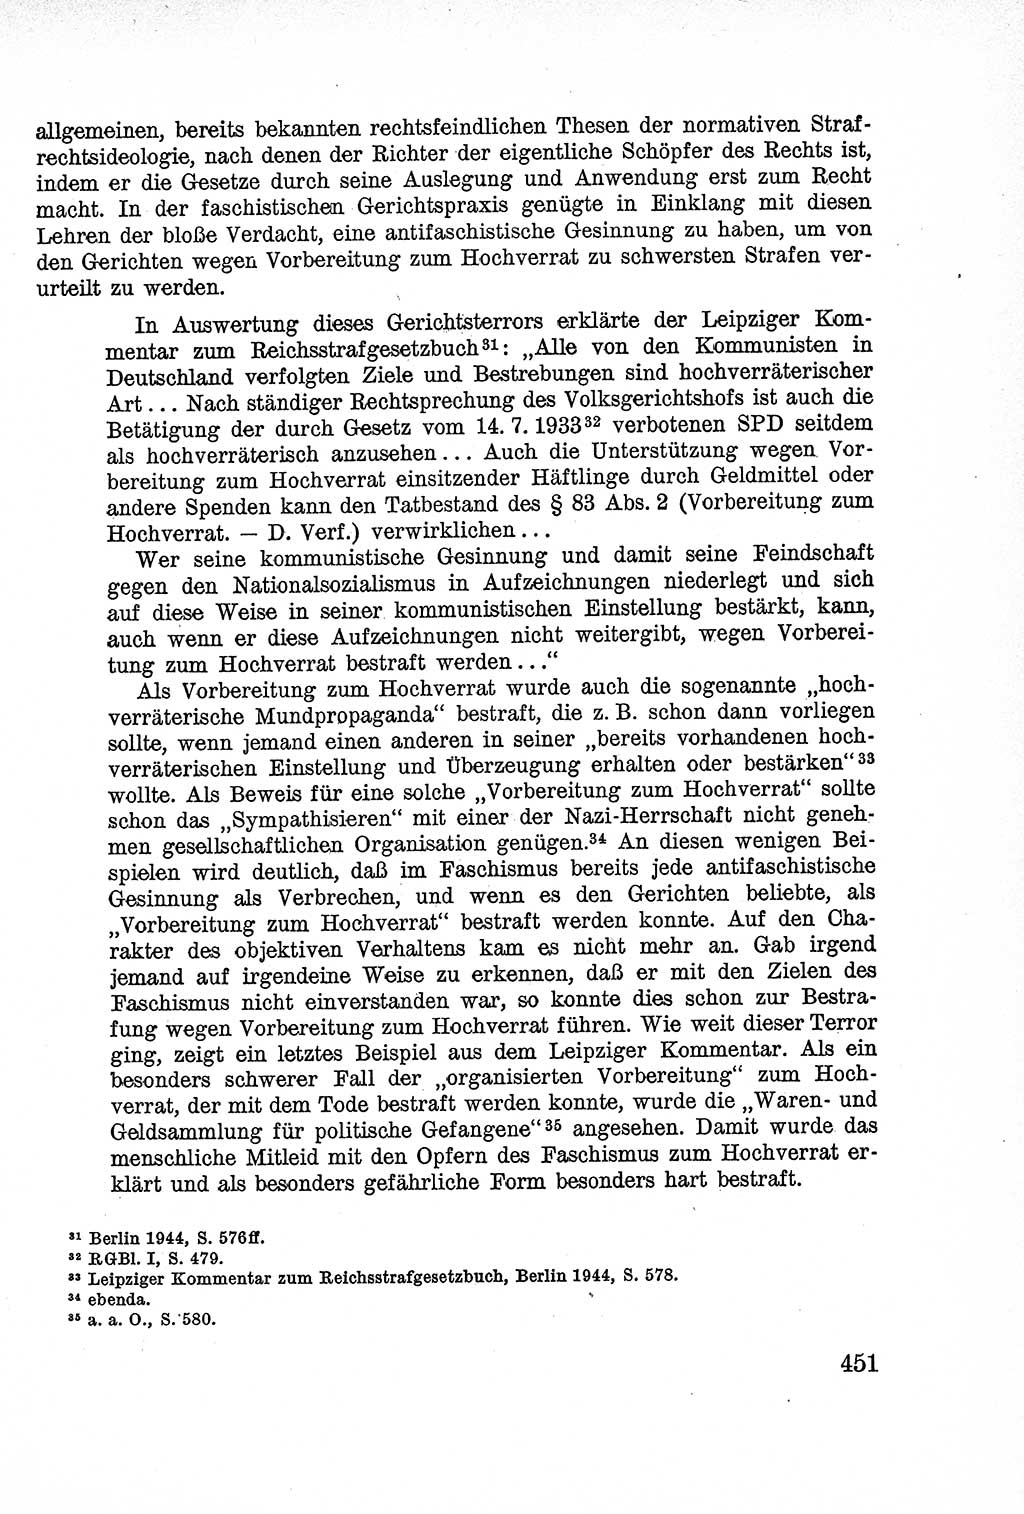 Lehrbuch des Strafrechts der Deutschen Demokratischen Republik (DDR), Allgemeiner Teil 1957, Seite 451 (Lb. Strafr. DDR AT 1957, S. 451)